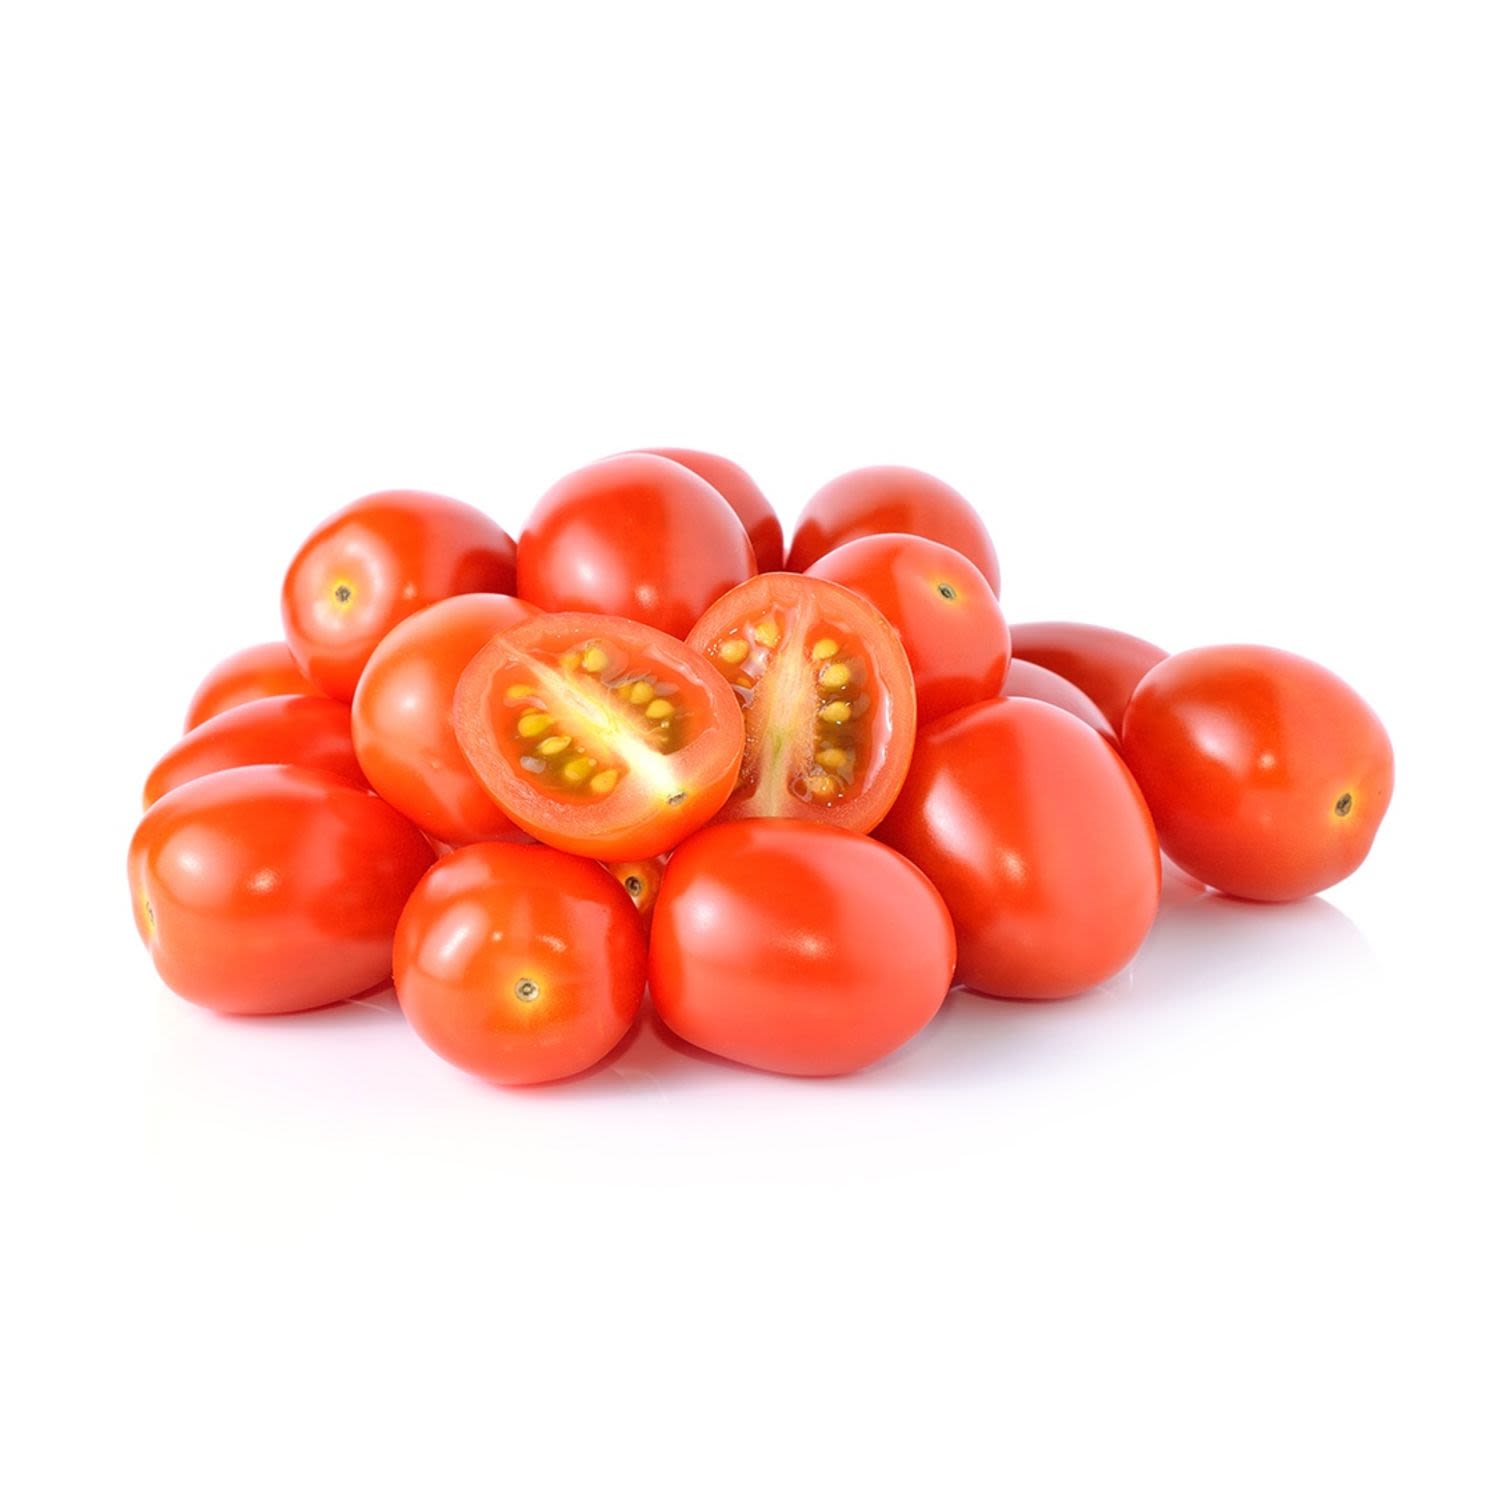 Tomatoes Blueys Punnet, 1 Each